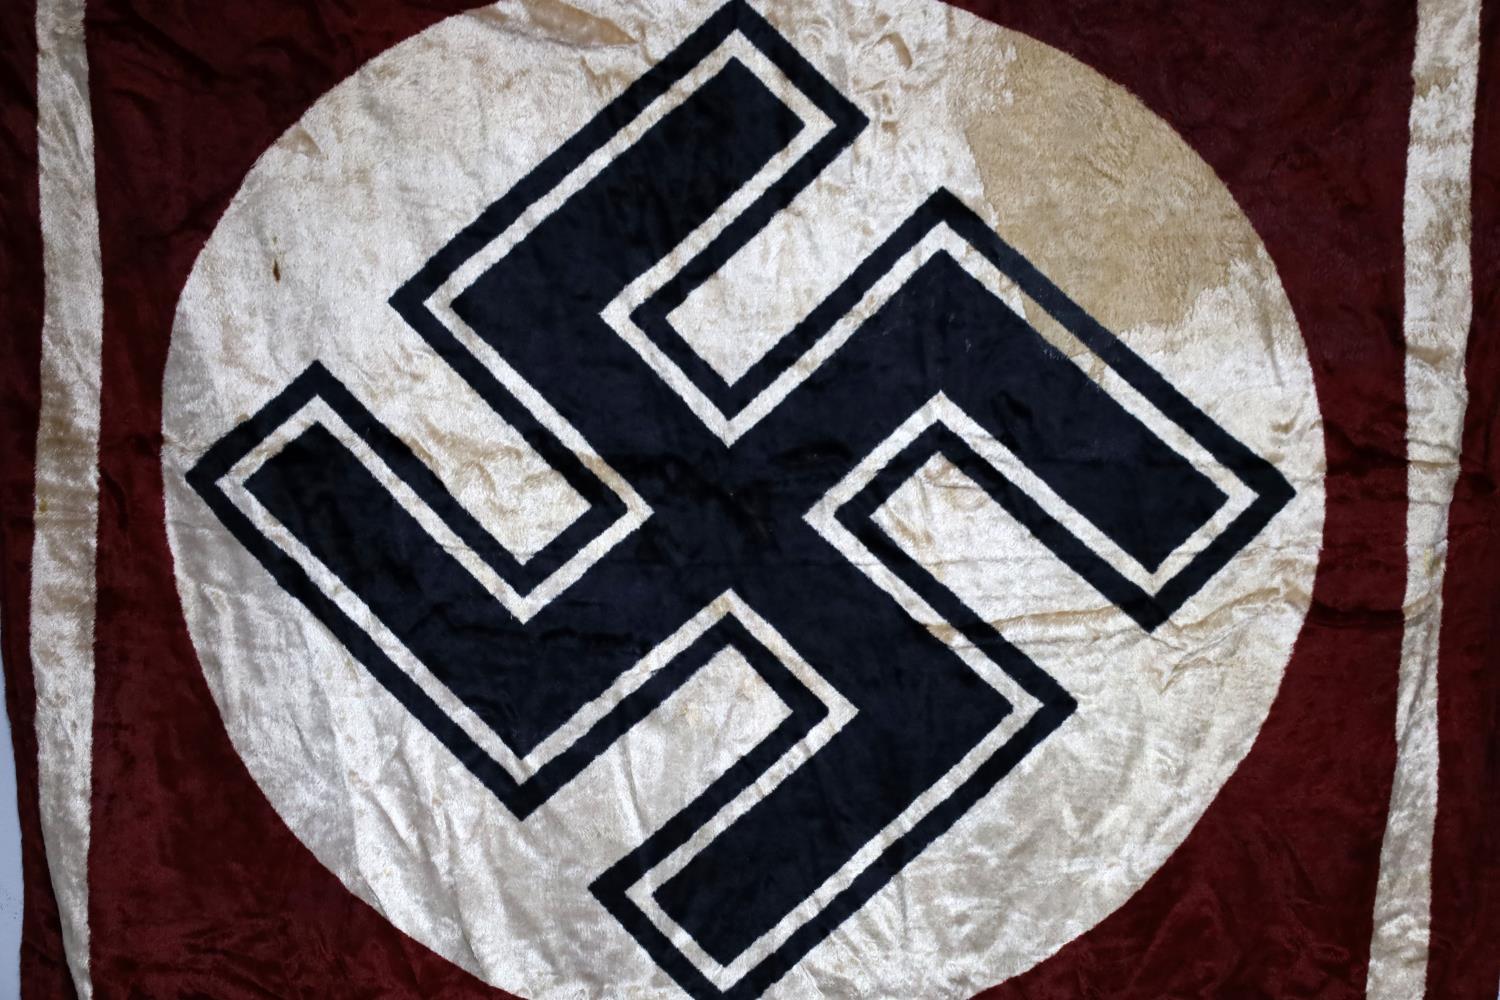 WWII GERMAN VELVET W GOLD TASSELS FLAG